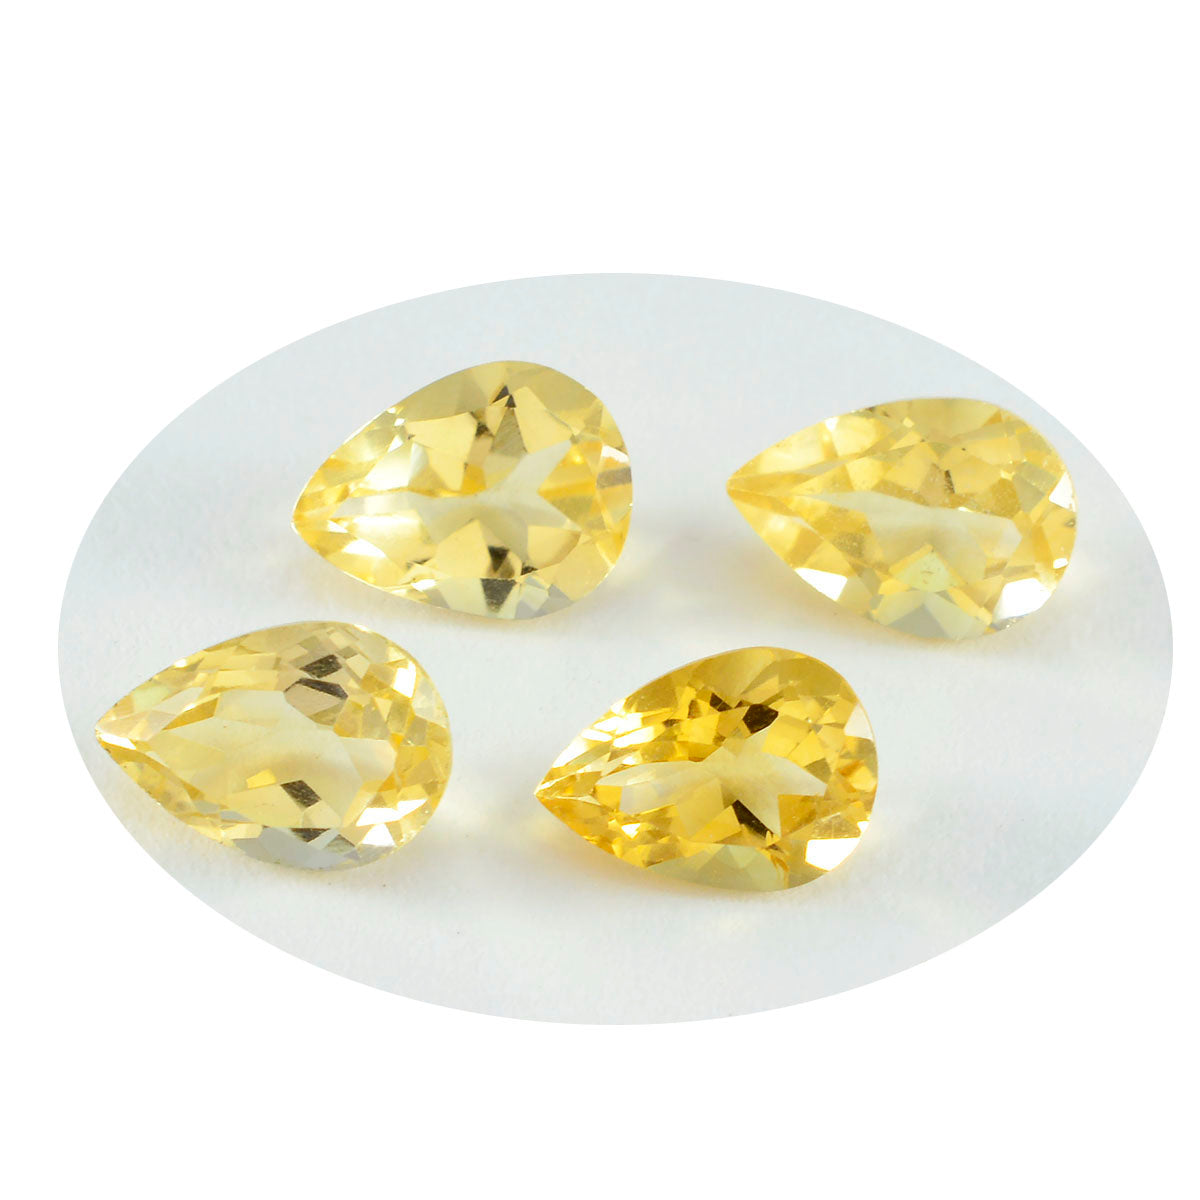 riyogems 1 шт. натуральный желтый цитрин ограненный 6x9 мм драгоценный камень грушевидной формы отличного качества